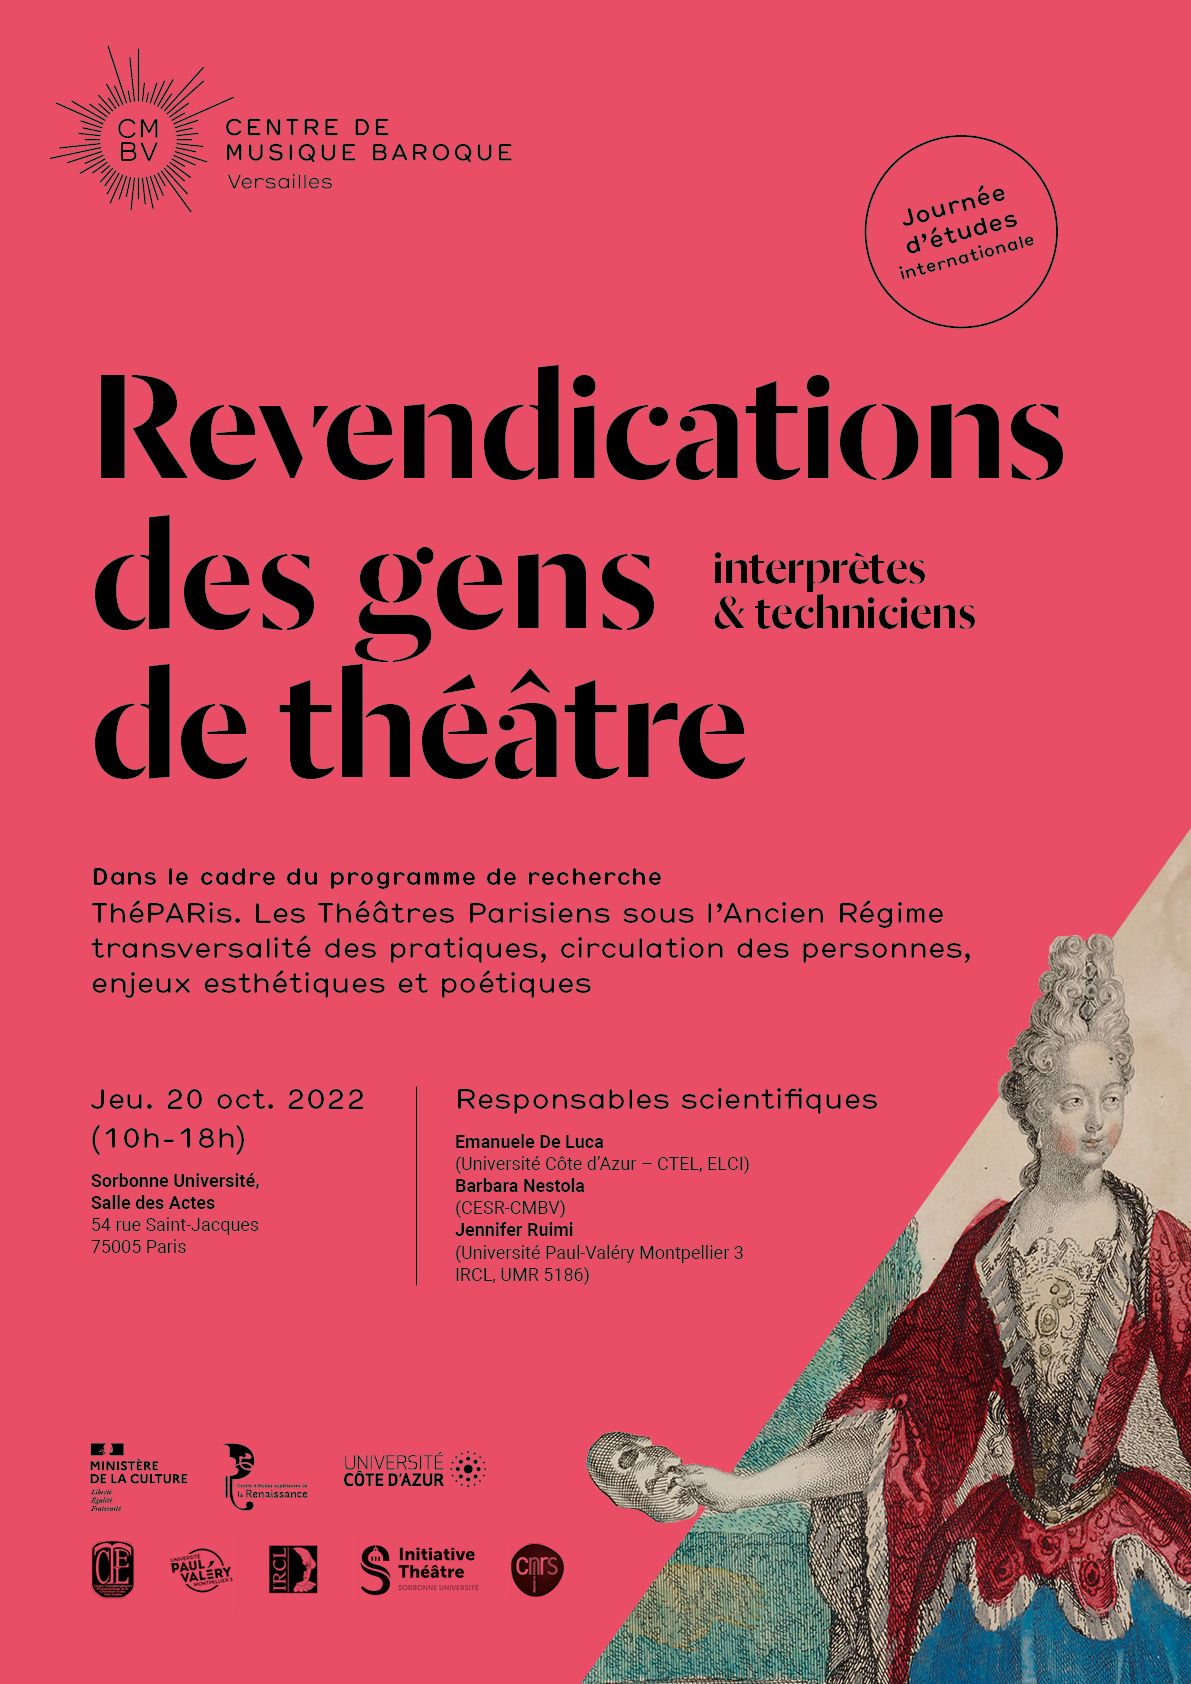 Revendications des gens de théâtre, interprètes et techniciens (Sorbonne)